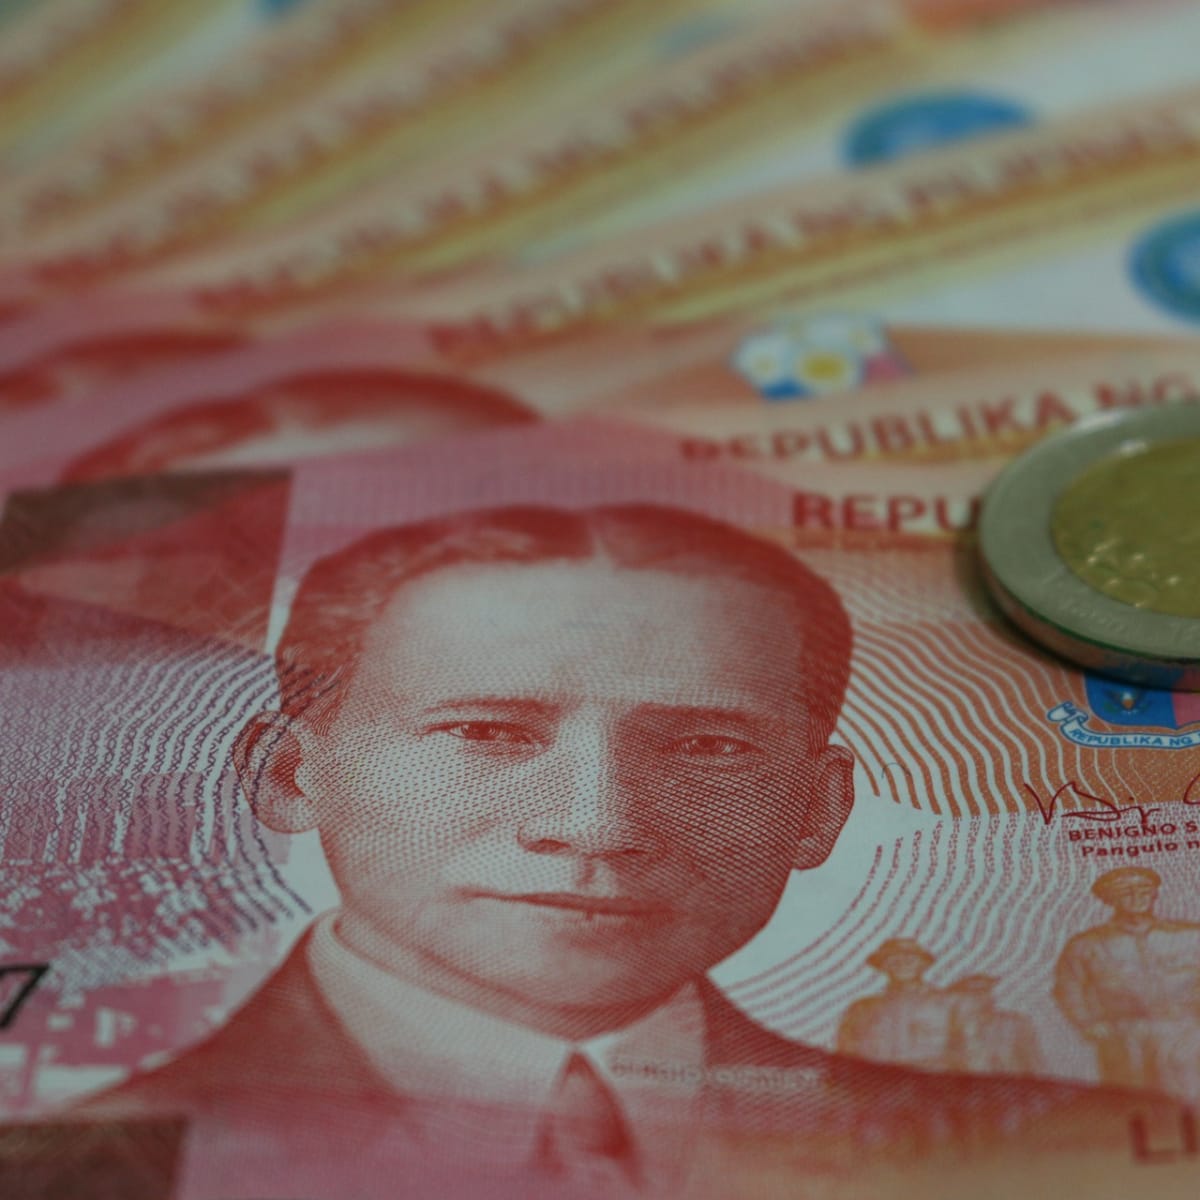 100 philippine peso bill